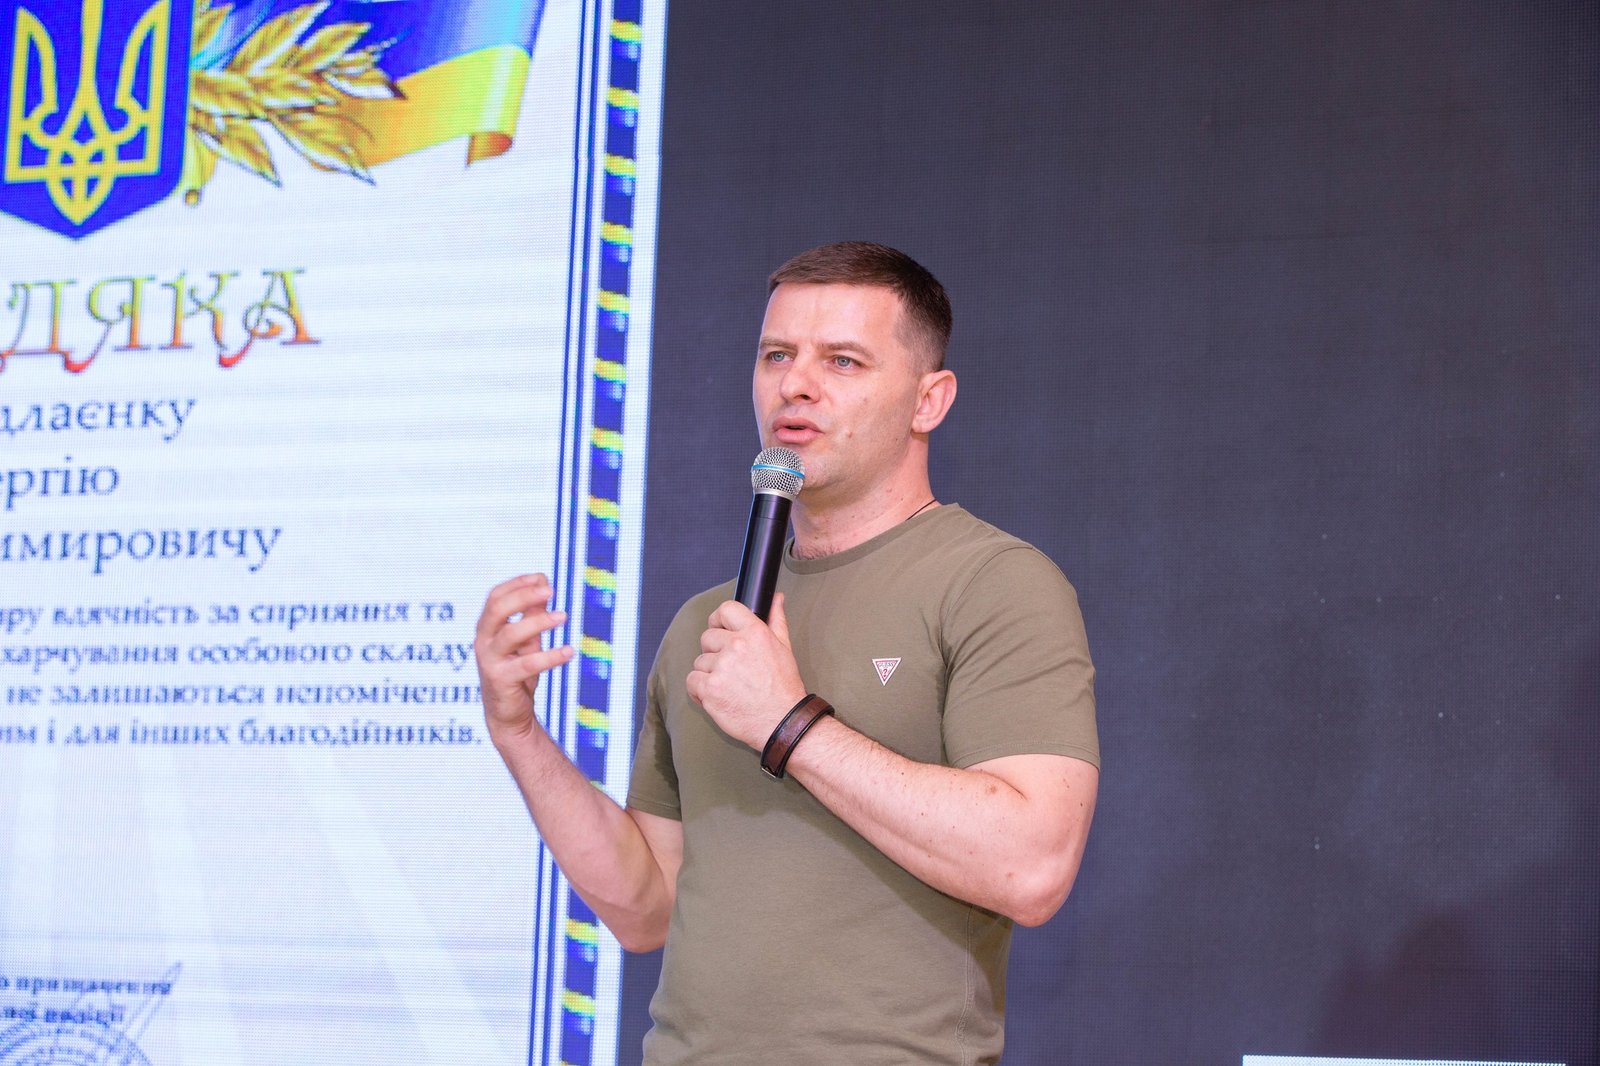 Прокоментували результати другого благодійного марафону і співорганізатори - Благодійний Фонд "Український Альянс" Микола Філонов.